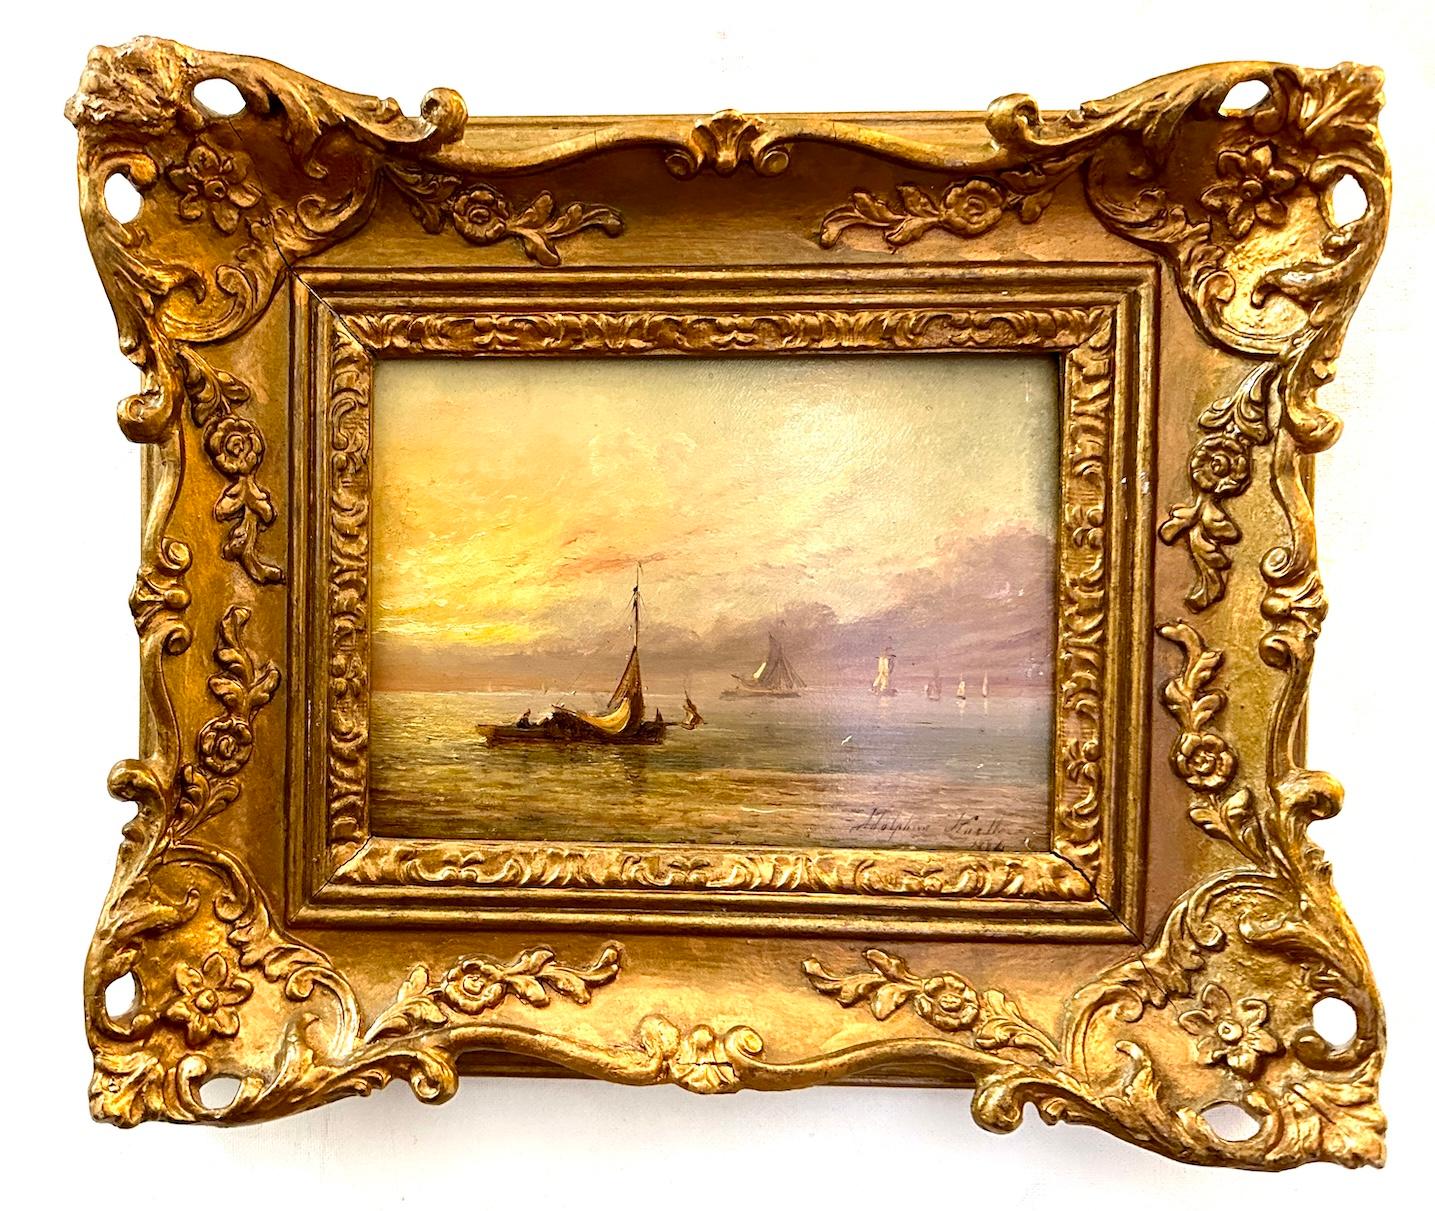 Adolphus Knell Landscape Painting – Englisches Fischerboot auf See mit Sonnenaufgang oder Sonnenuntergang aus dem 19. Jahrhundert